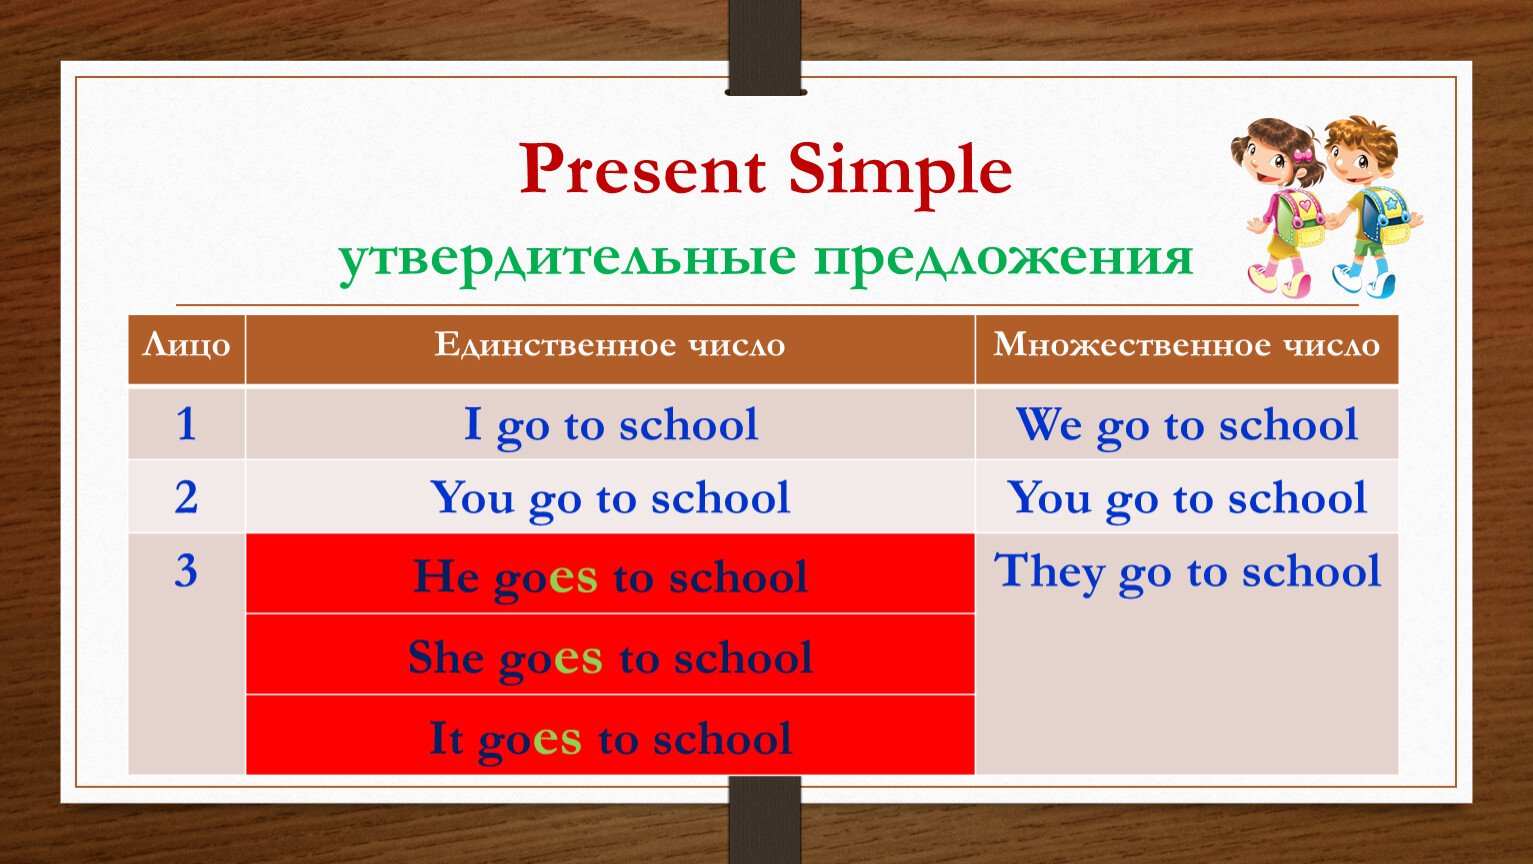 Англ present simple. Презент Симпл. Present simple в английском языке. Present simple утвердительные. Презент Симпл утвердительные предложения.